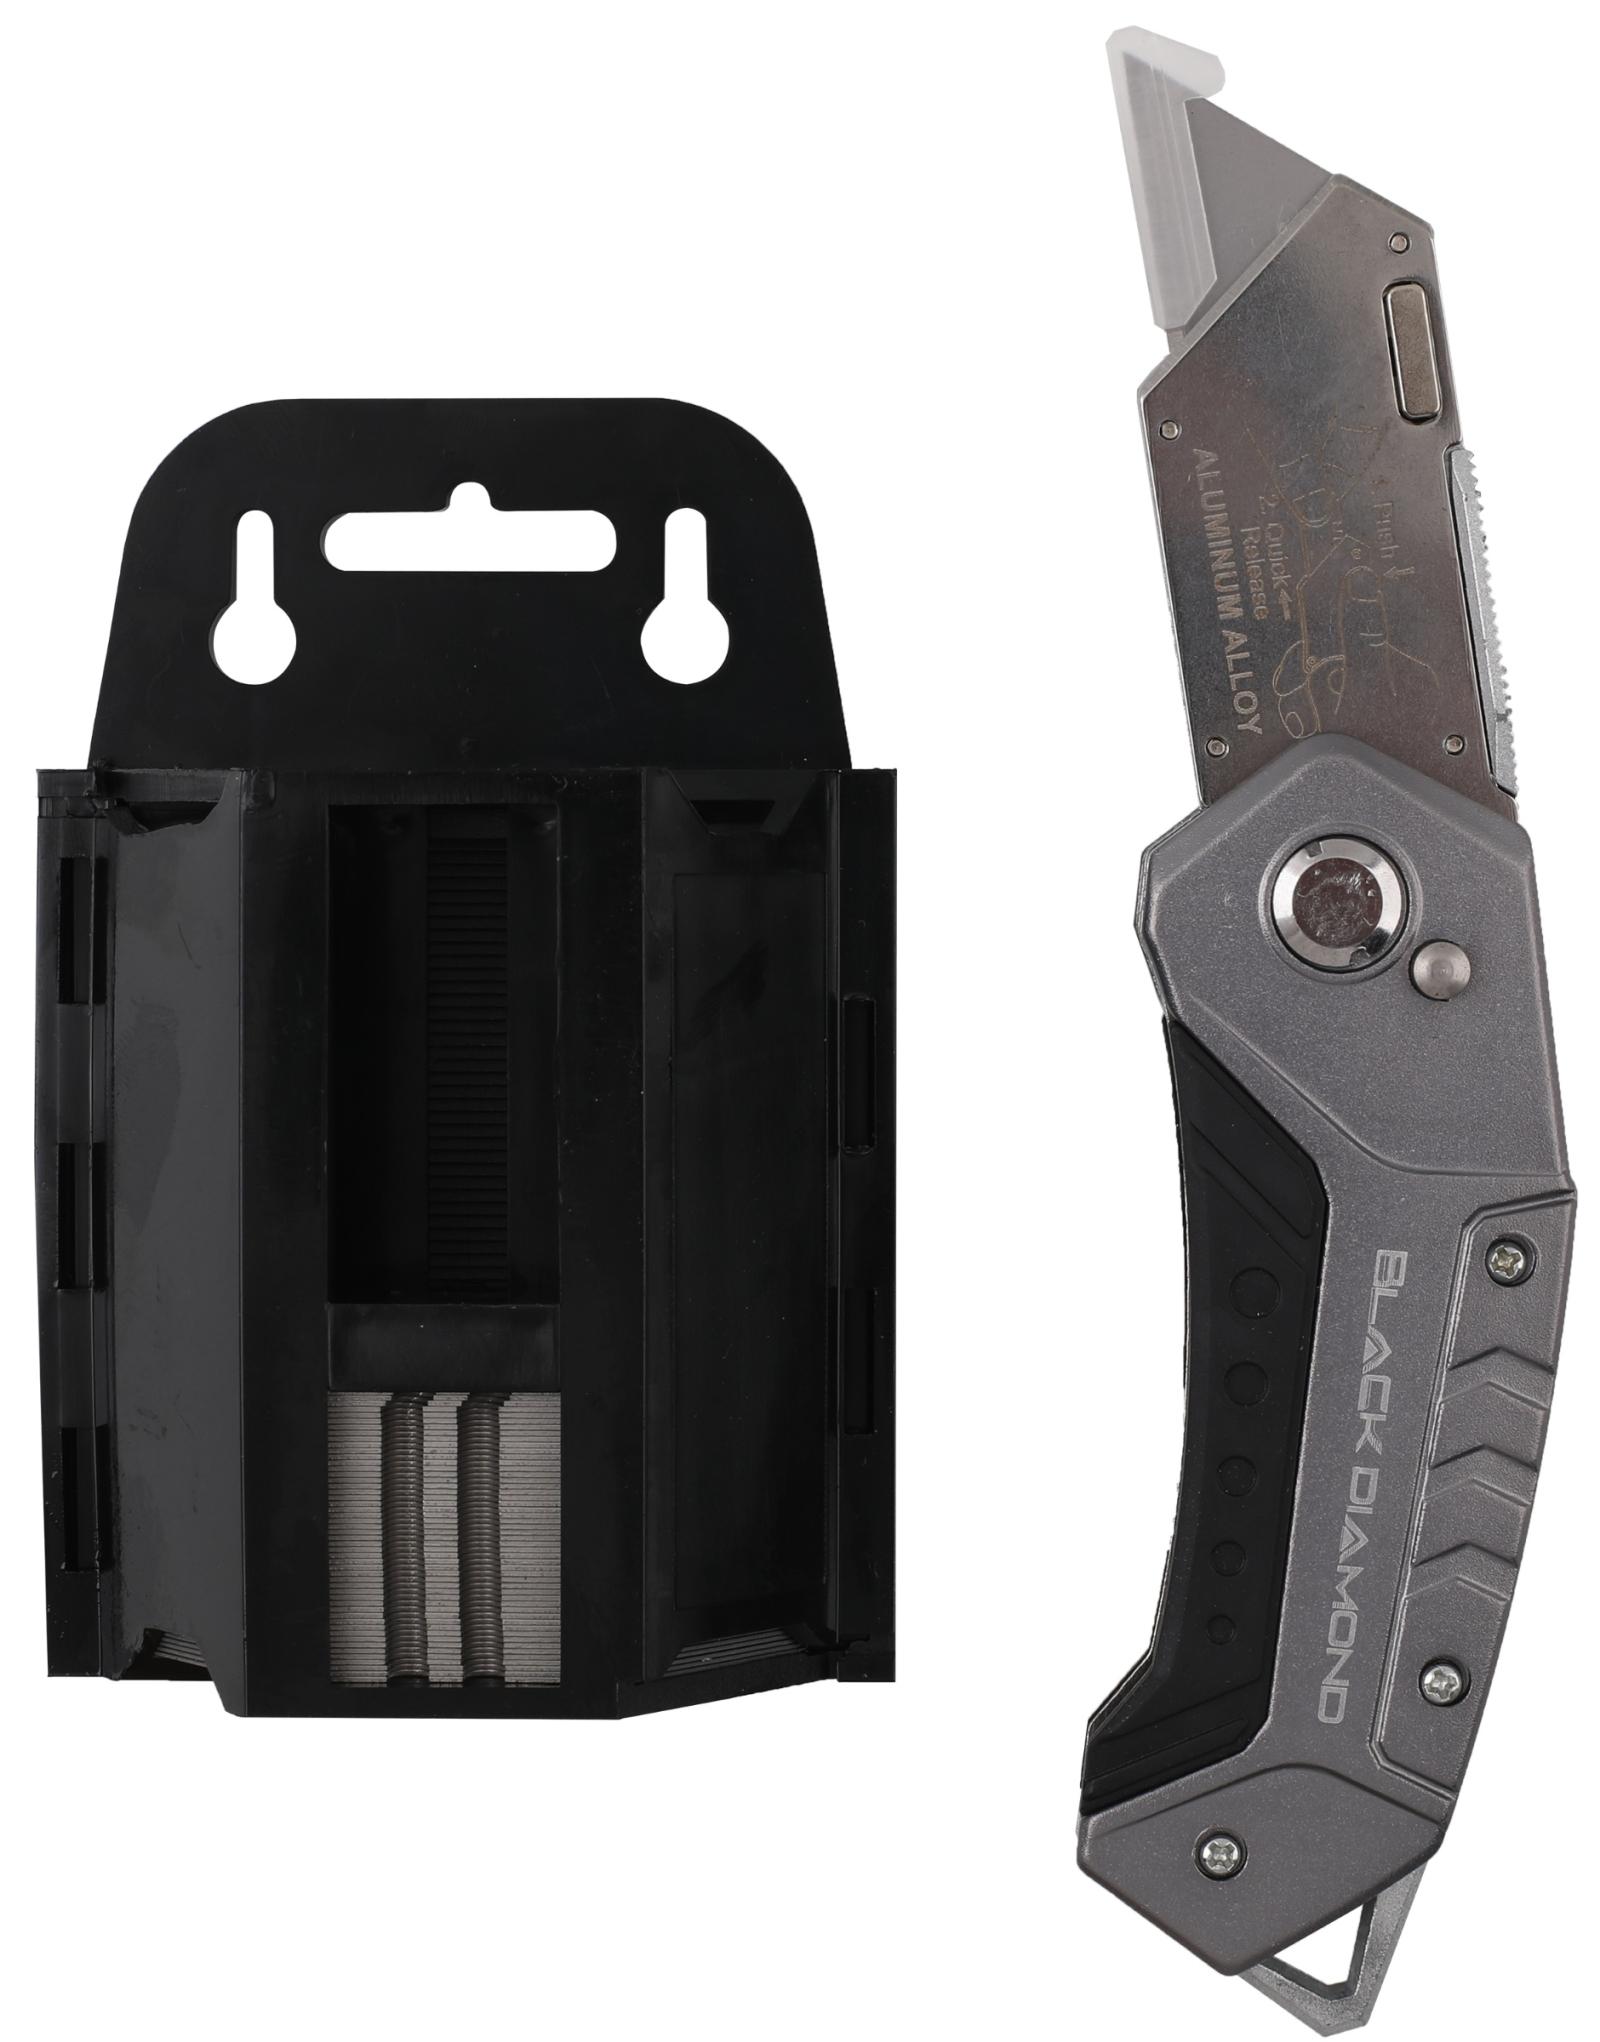 Black Diamond Lockback Utility Knife Kit